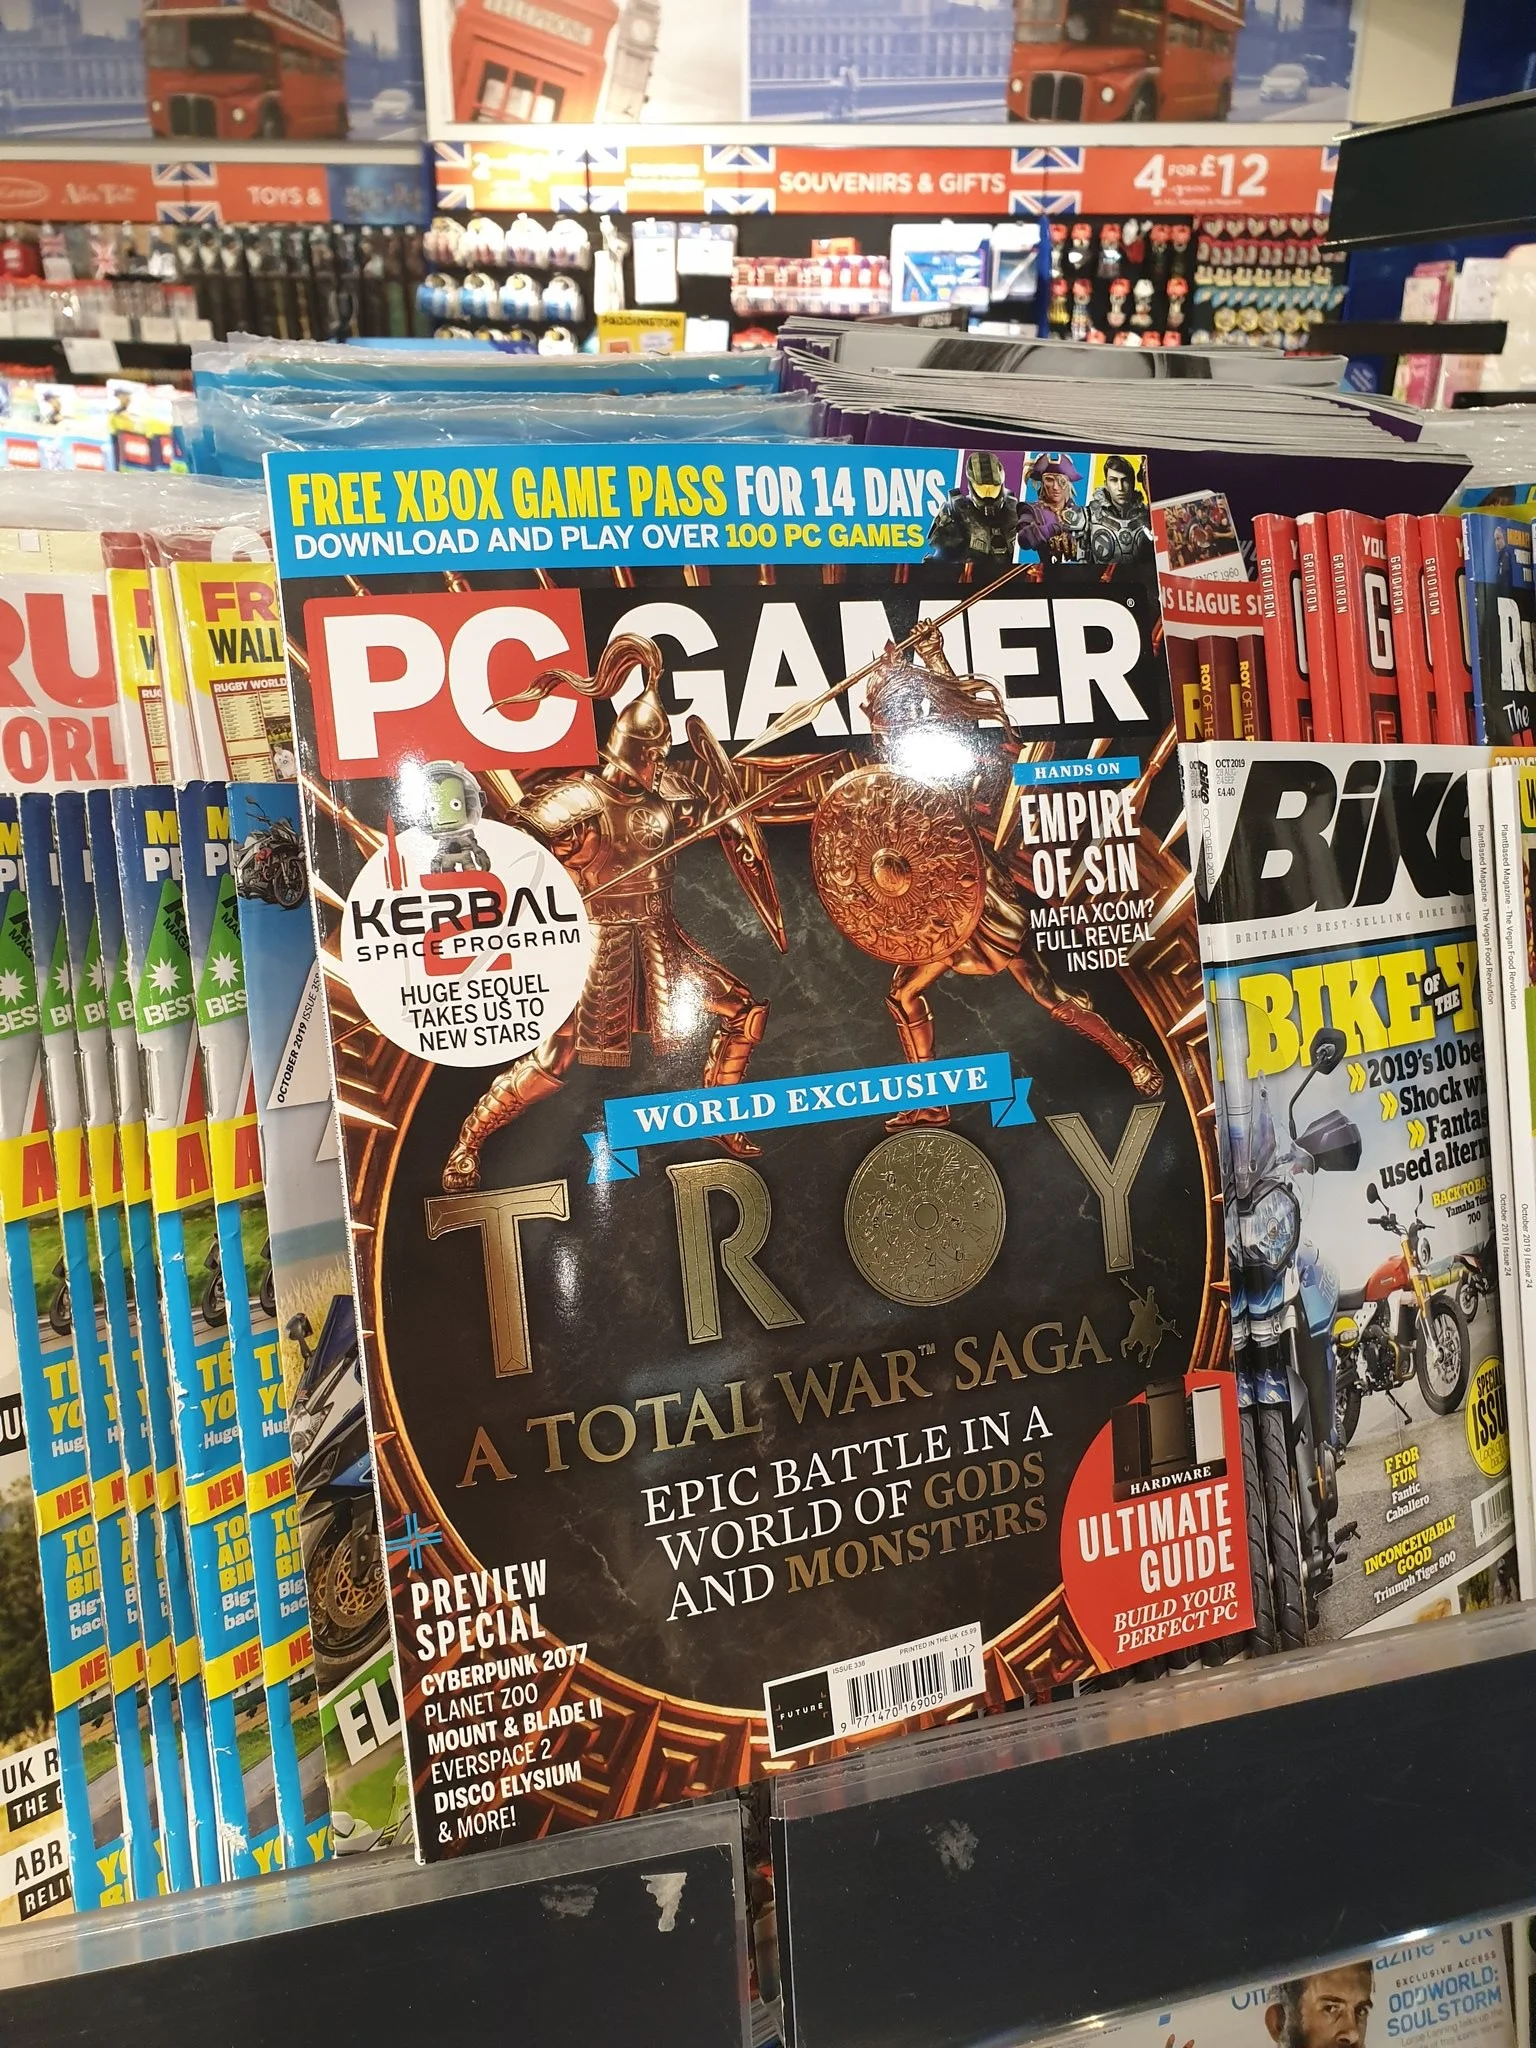 Total War Saga: Troy до анонса засветилась на обложке PC Gamer - фото 1